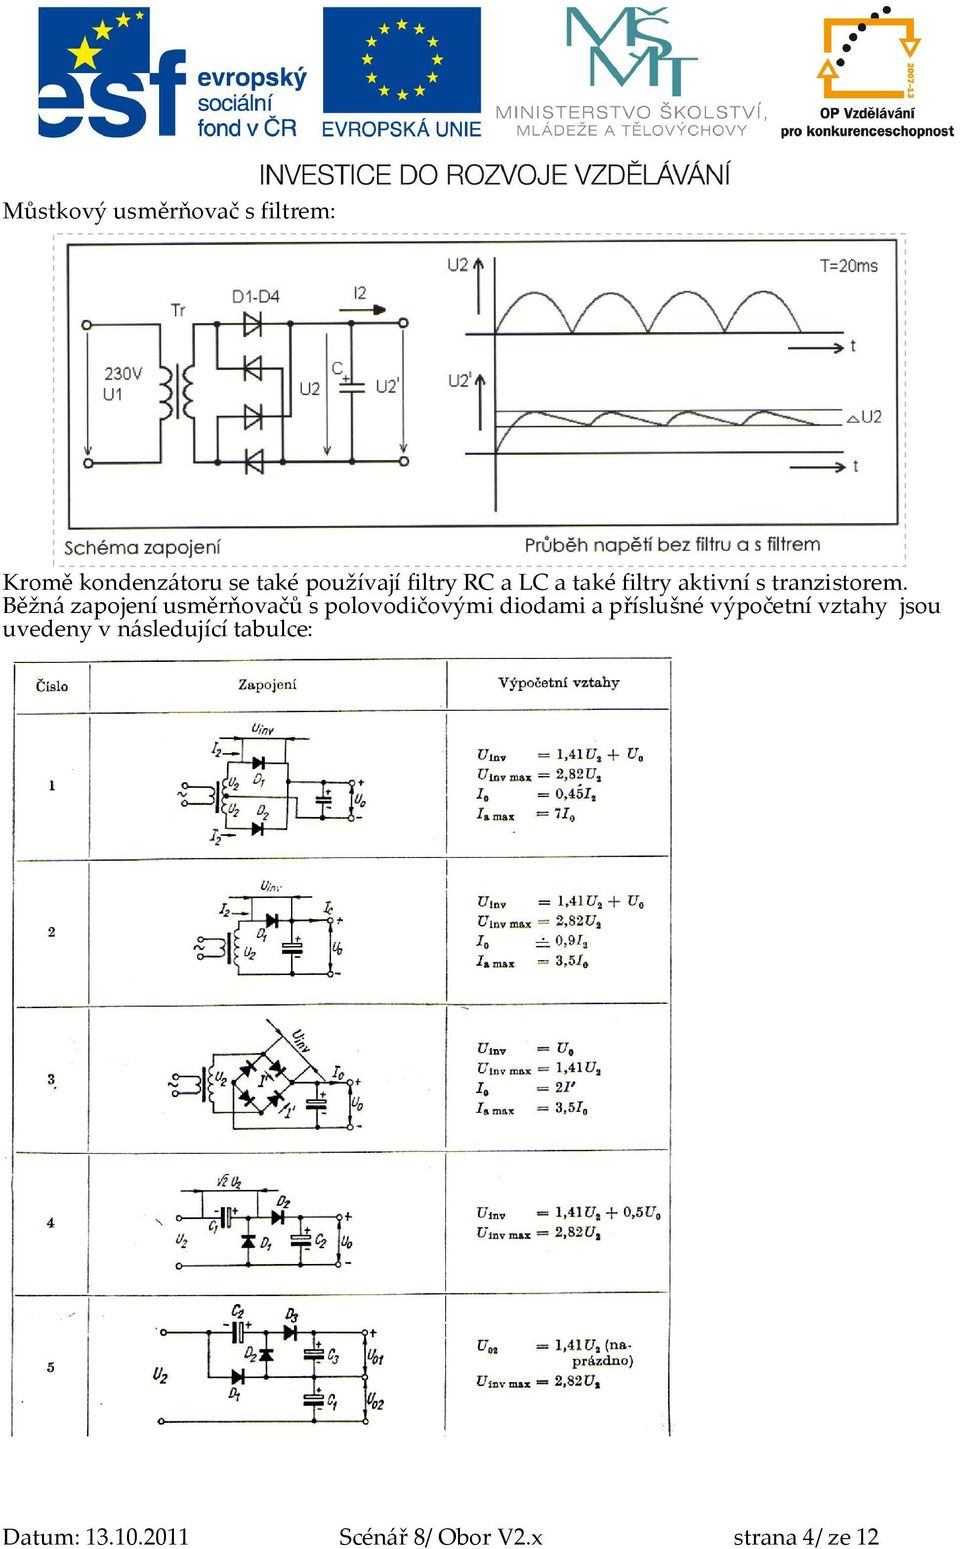 Běžná zapojení usměrňovačů s polovodičovými diodami a příslušné